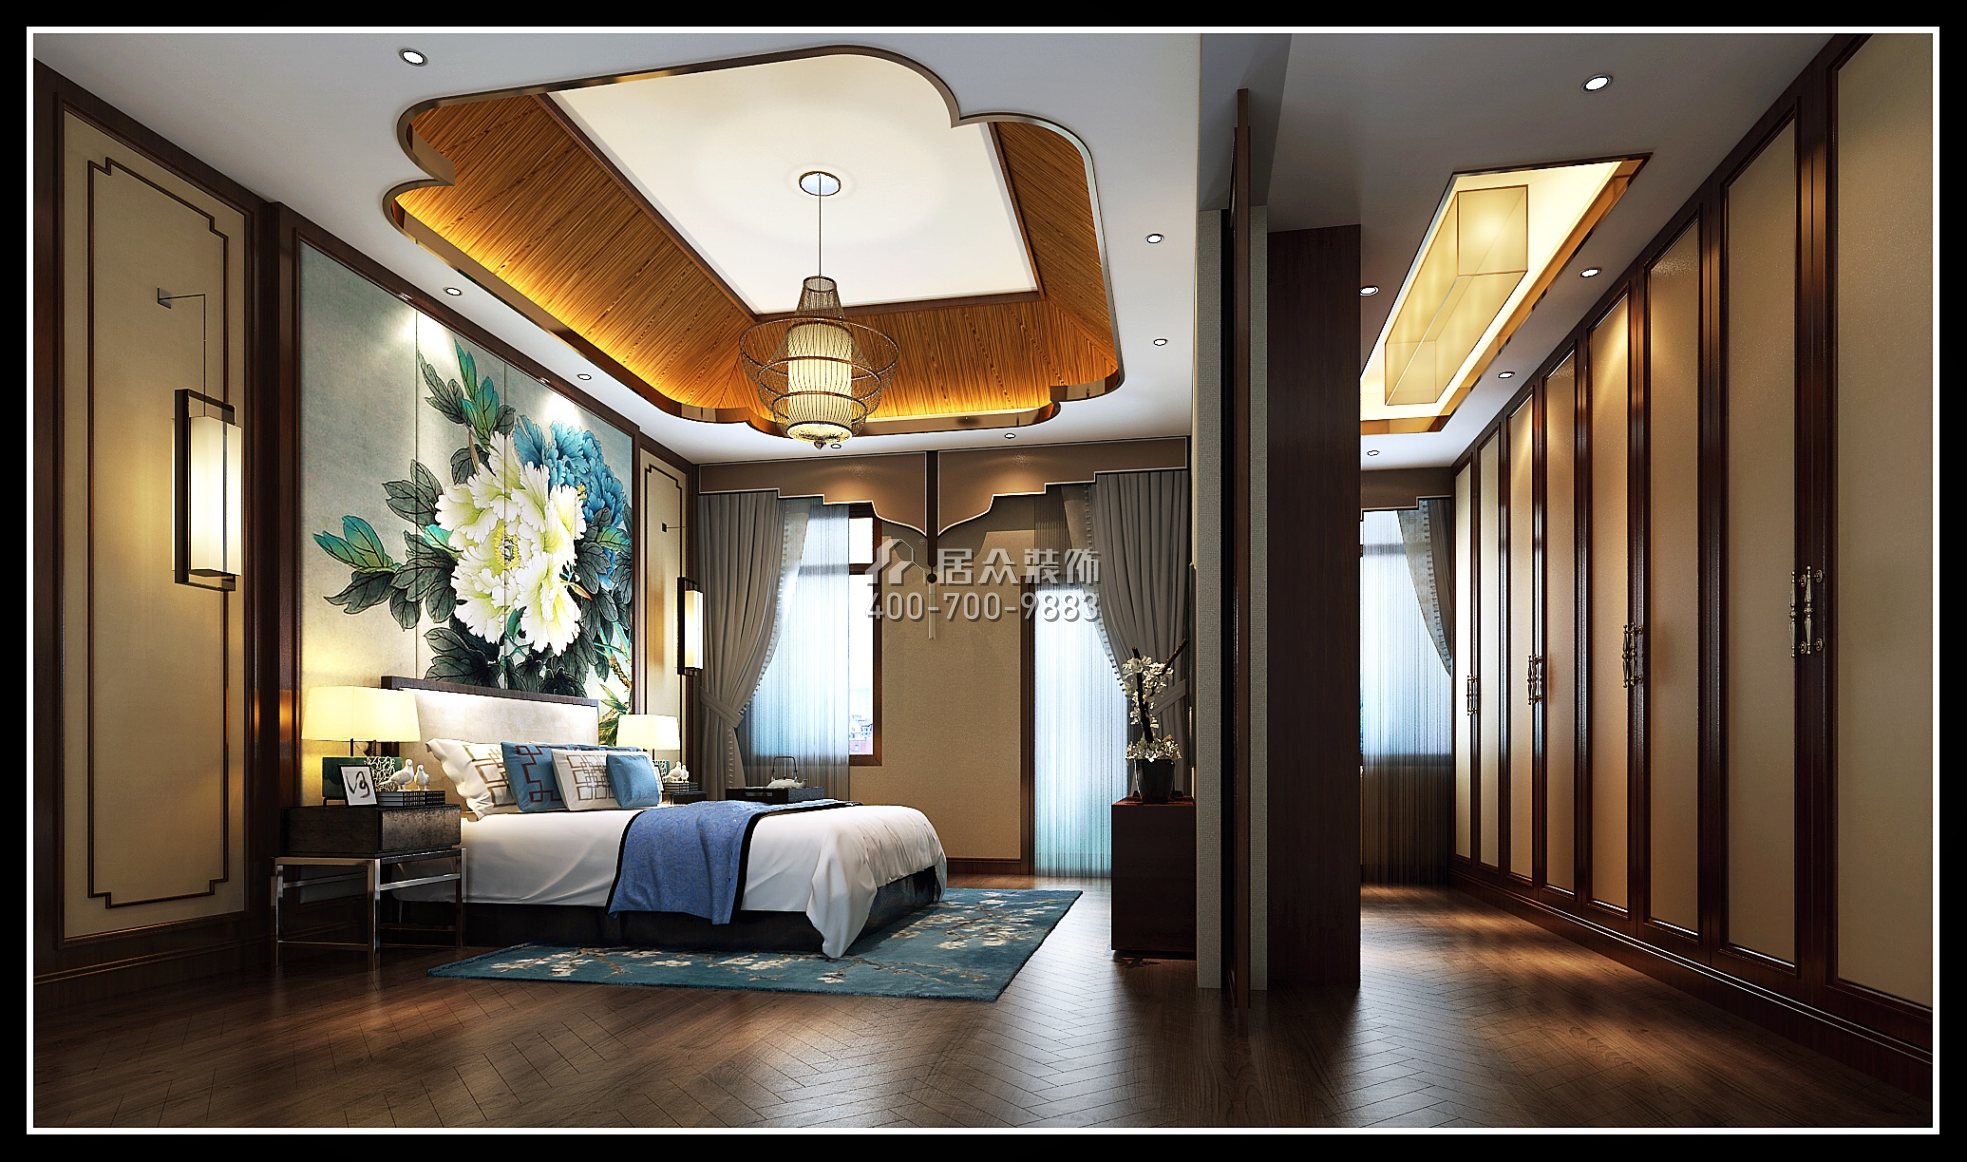 御庭苑350平方米中式风格别墅户型卧室装修效果图